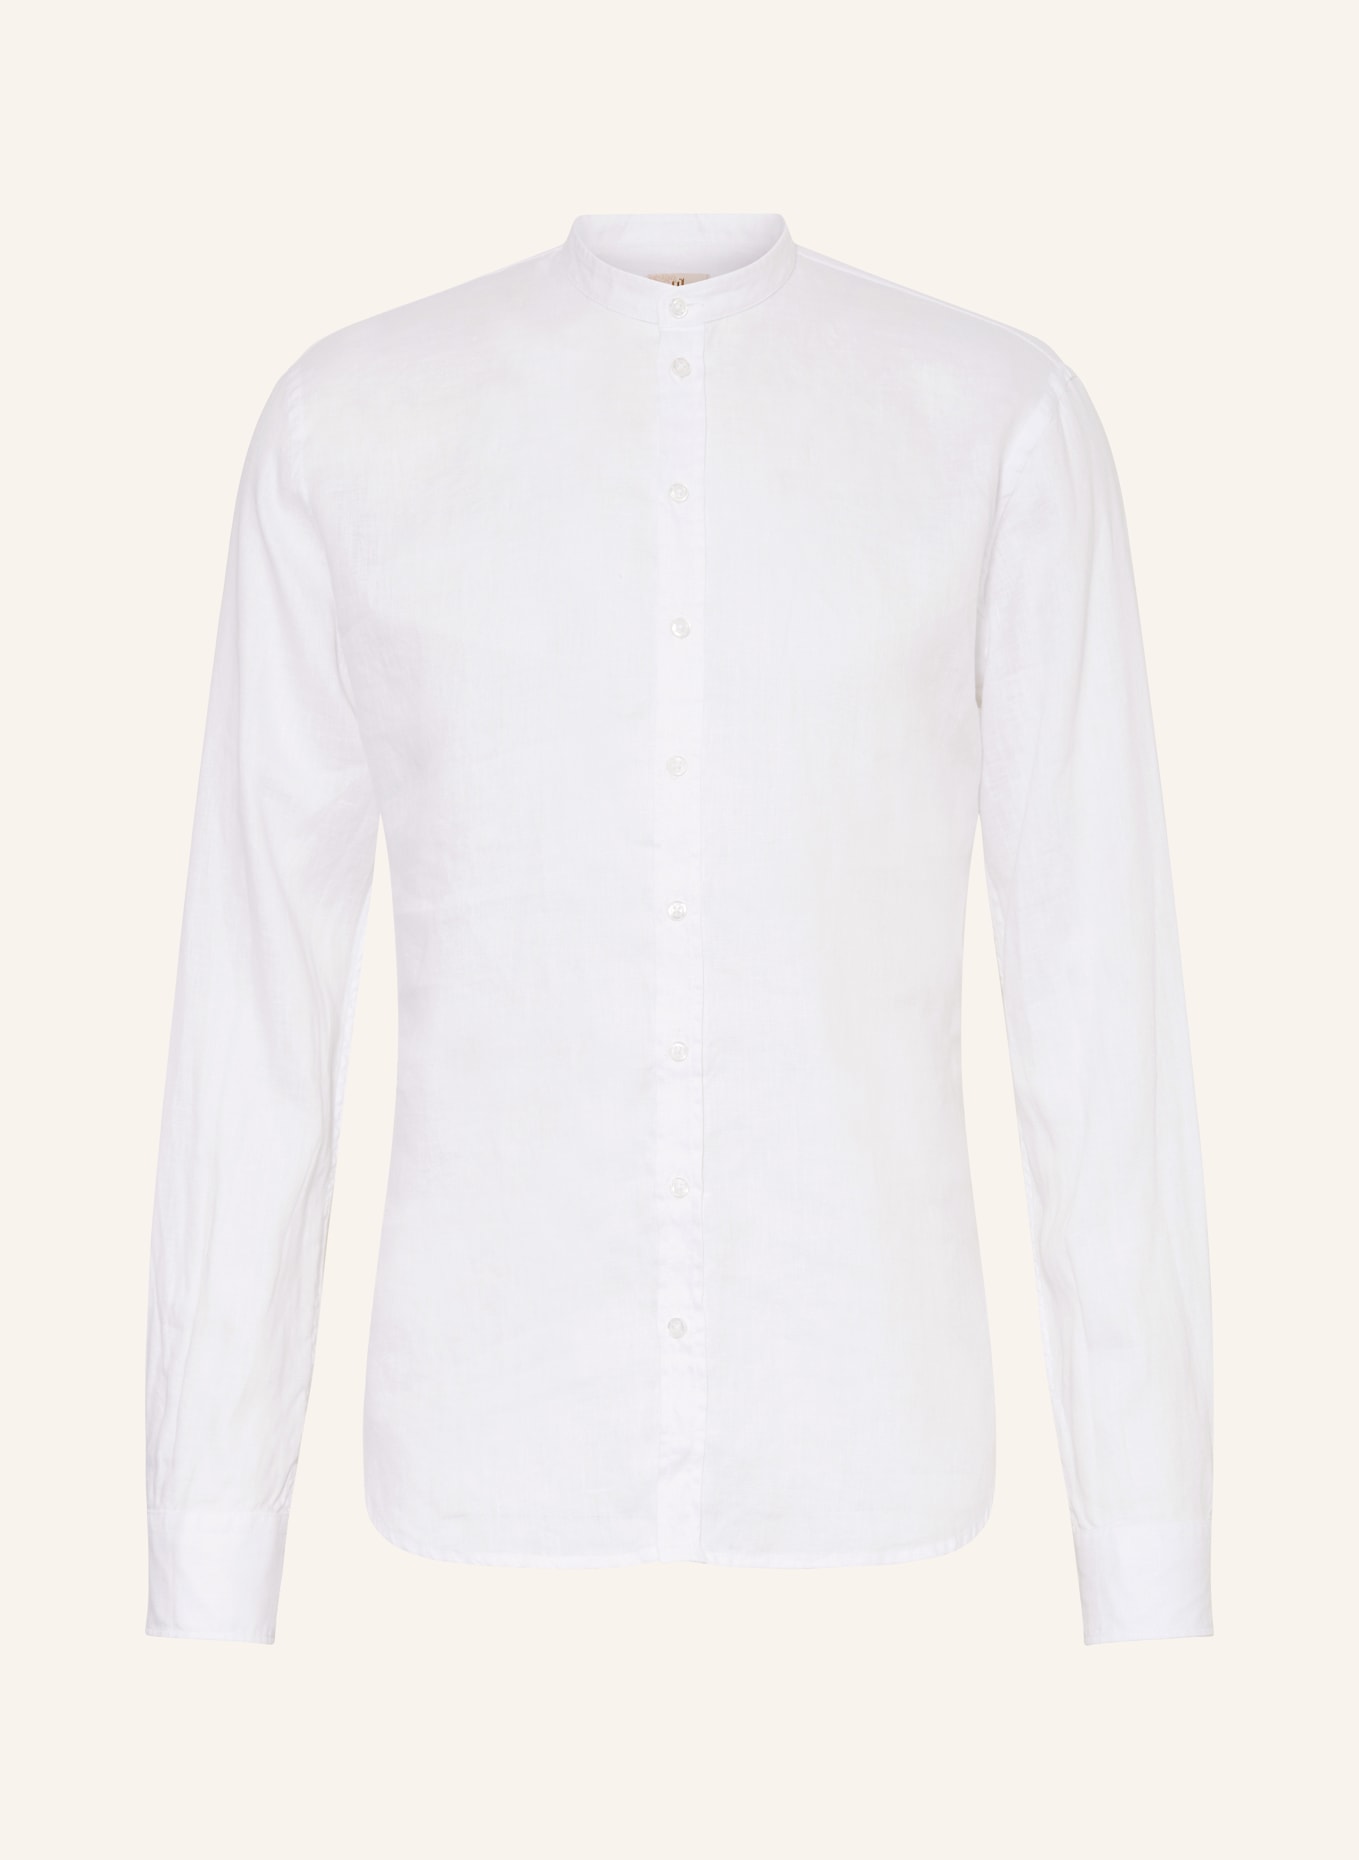 Q1 Manufaktur Leinenhemd Slim Relaxed Fit mit Stehkragen, Farbe: WEISS (Bild 1)